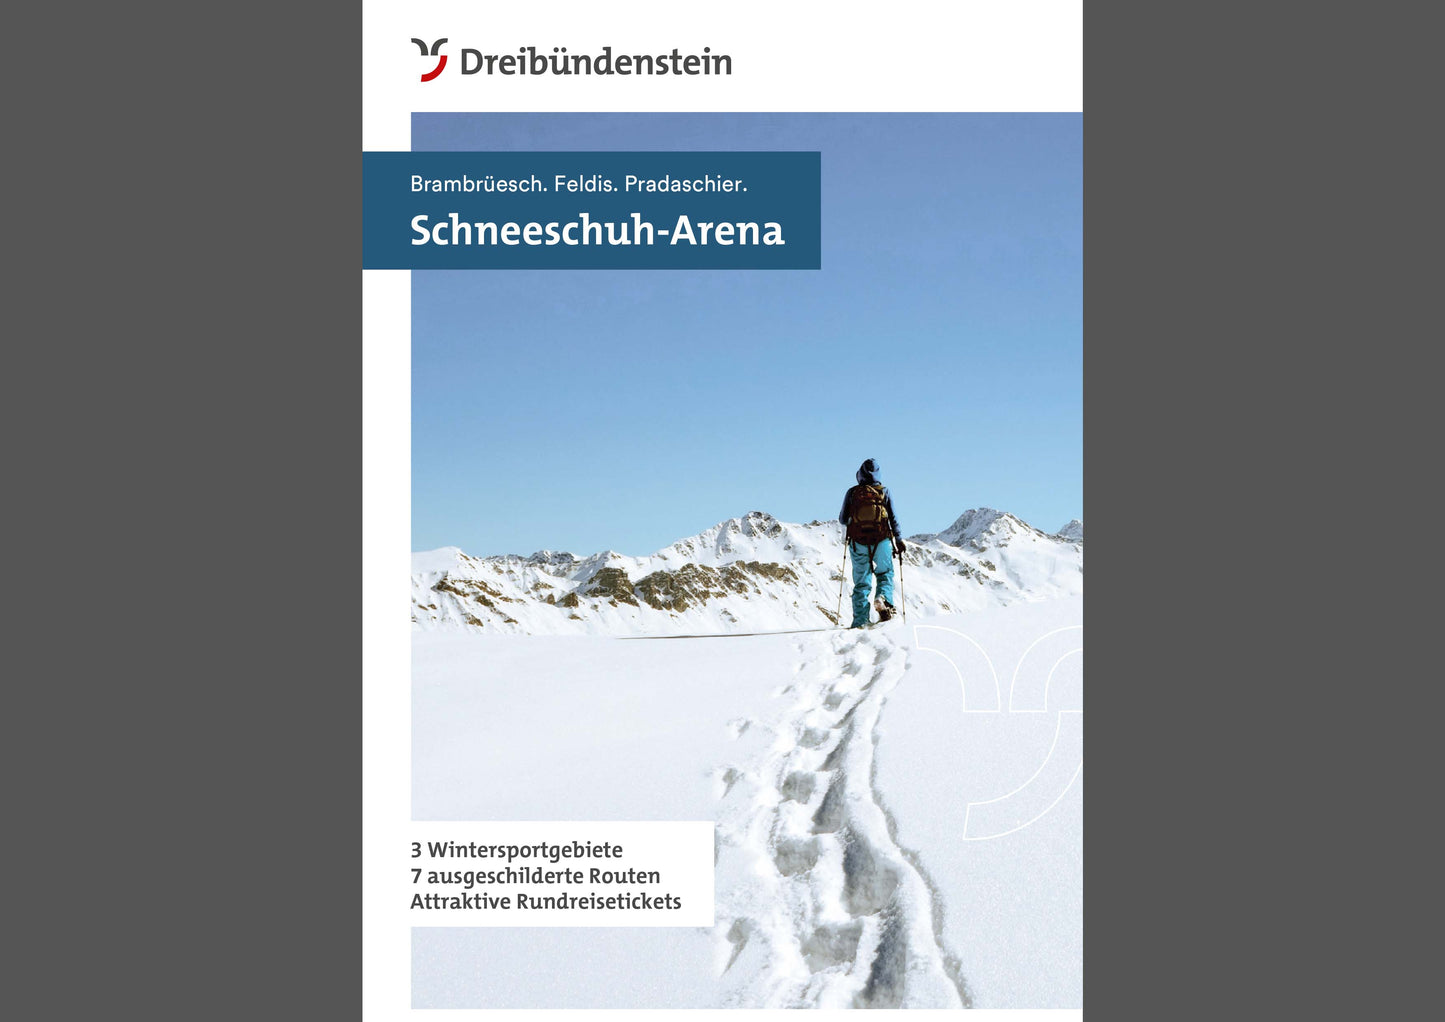 LT Schneeschuh-Arena Dreibündenstein